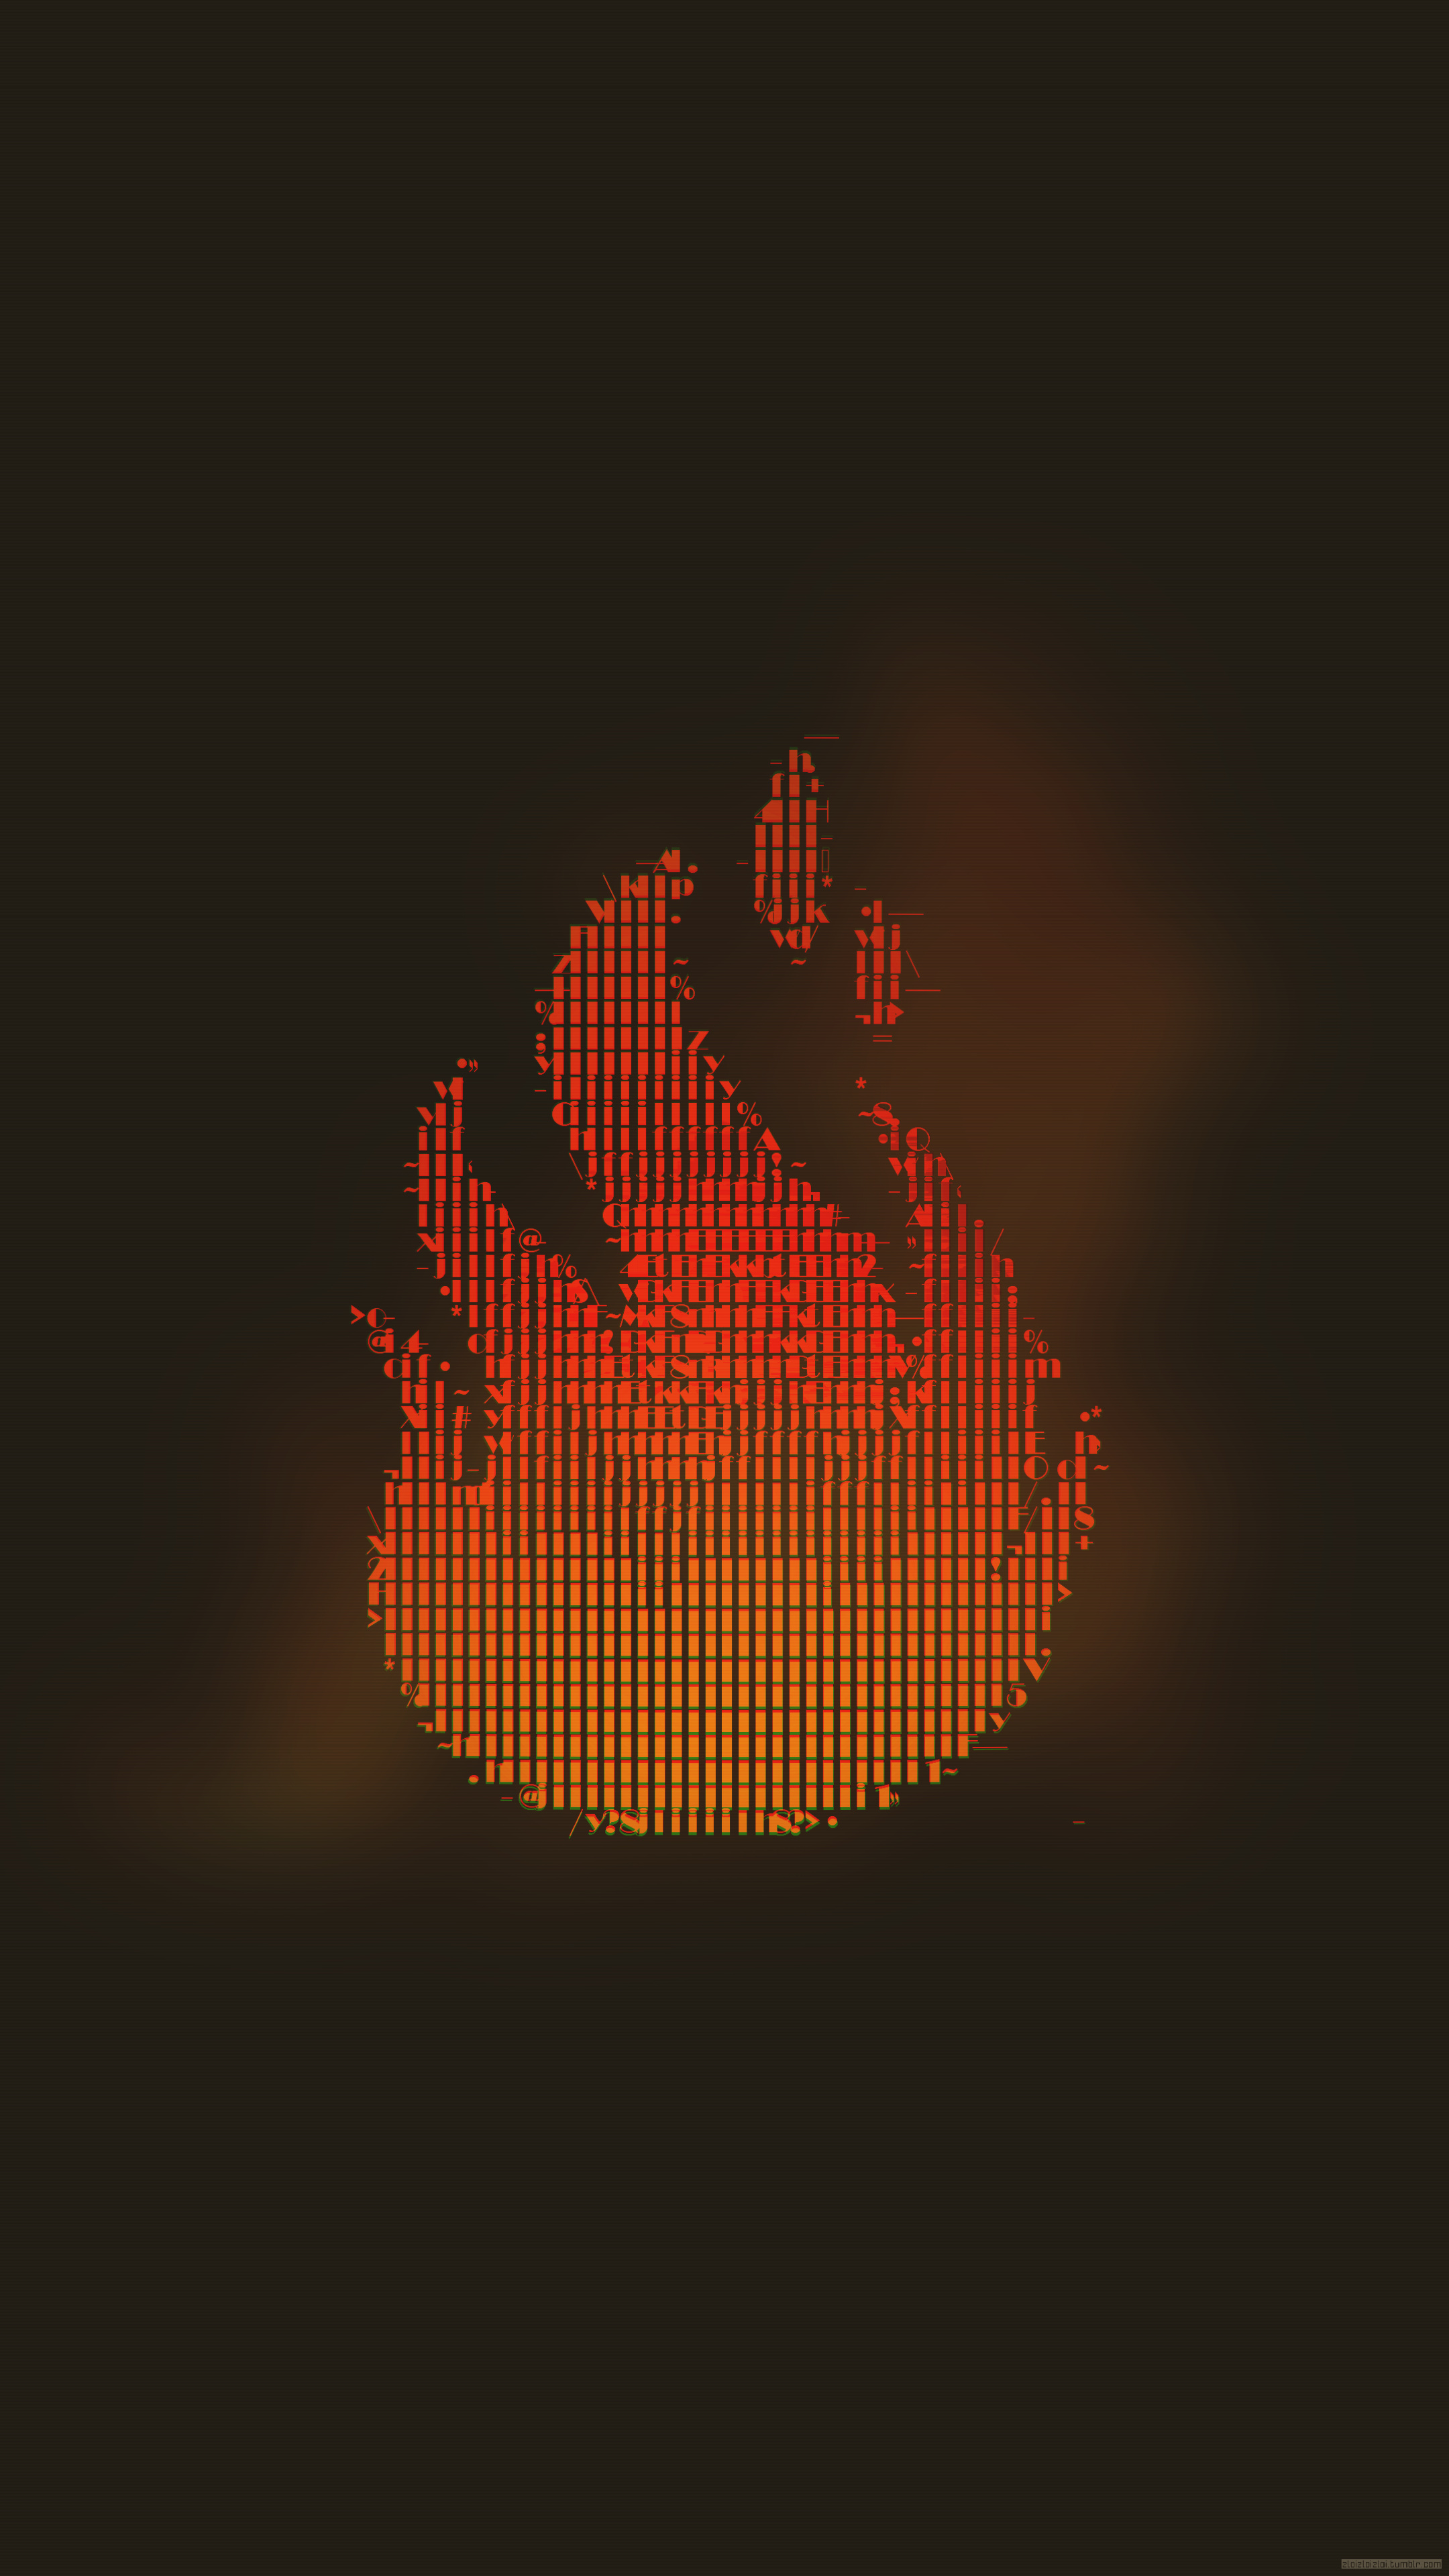 Glitch art fire wallpaper, Abstract fire art, Fire ASCII art, Maxalos HD wallpapers, Unique fire visuals, 2160x3840 4K Phone